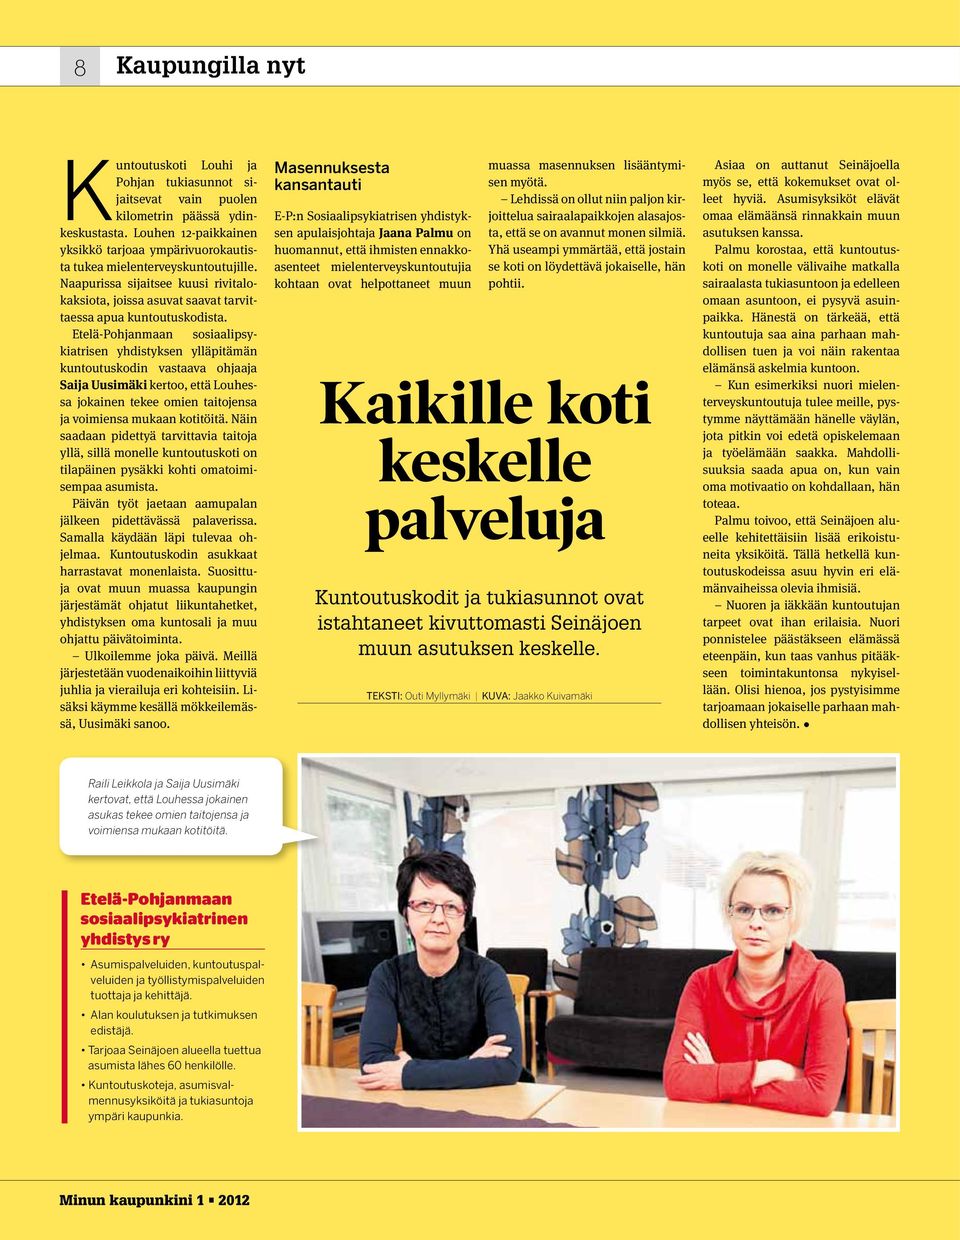 Etelä-Pohjanmaan sosiaalipsykiatrisen yhdistyksen ylläpitämän kuntoutuskodin vastaava ohjaaja Saija Uusimäki kertoo, että Louhessa jokainen tekee omien taitojensa ja voimiensa mukaan kotitöitä.